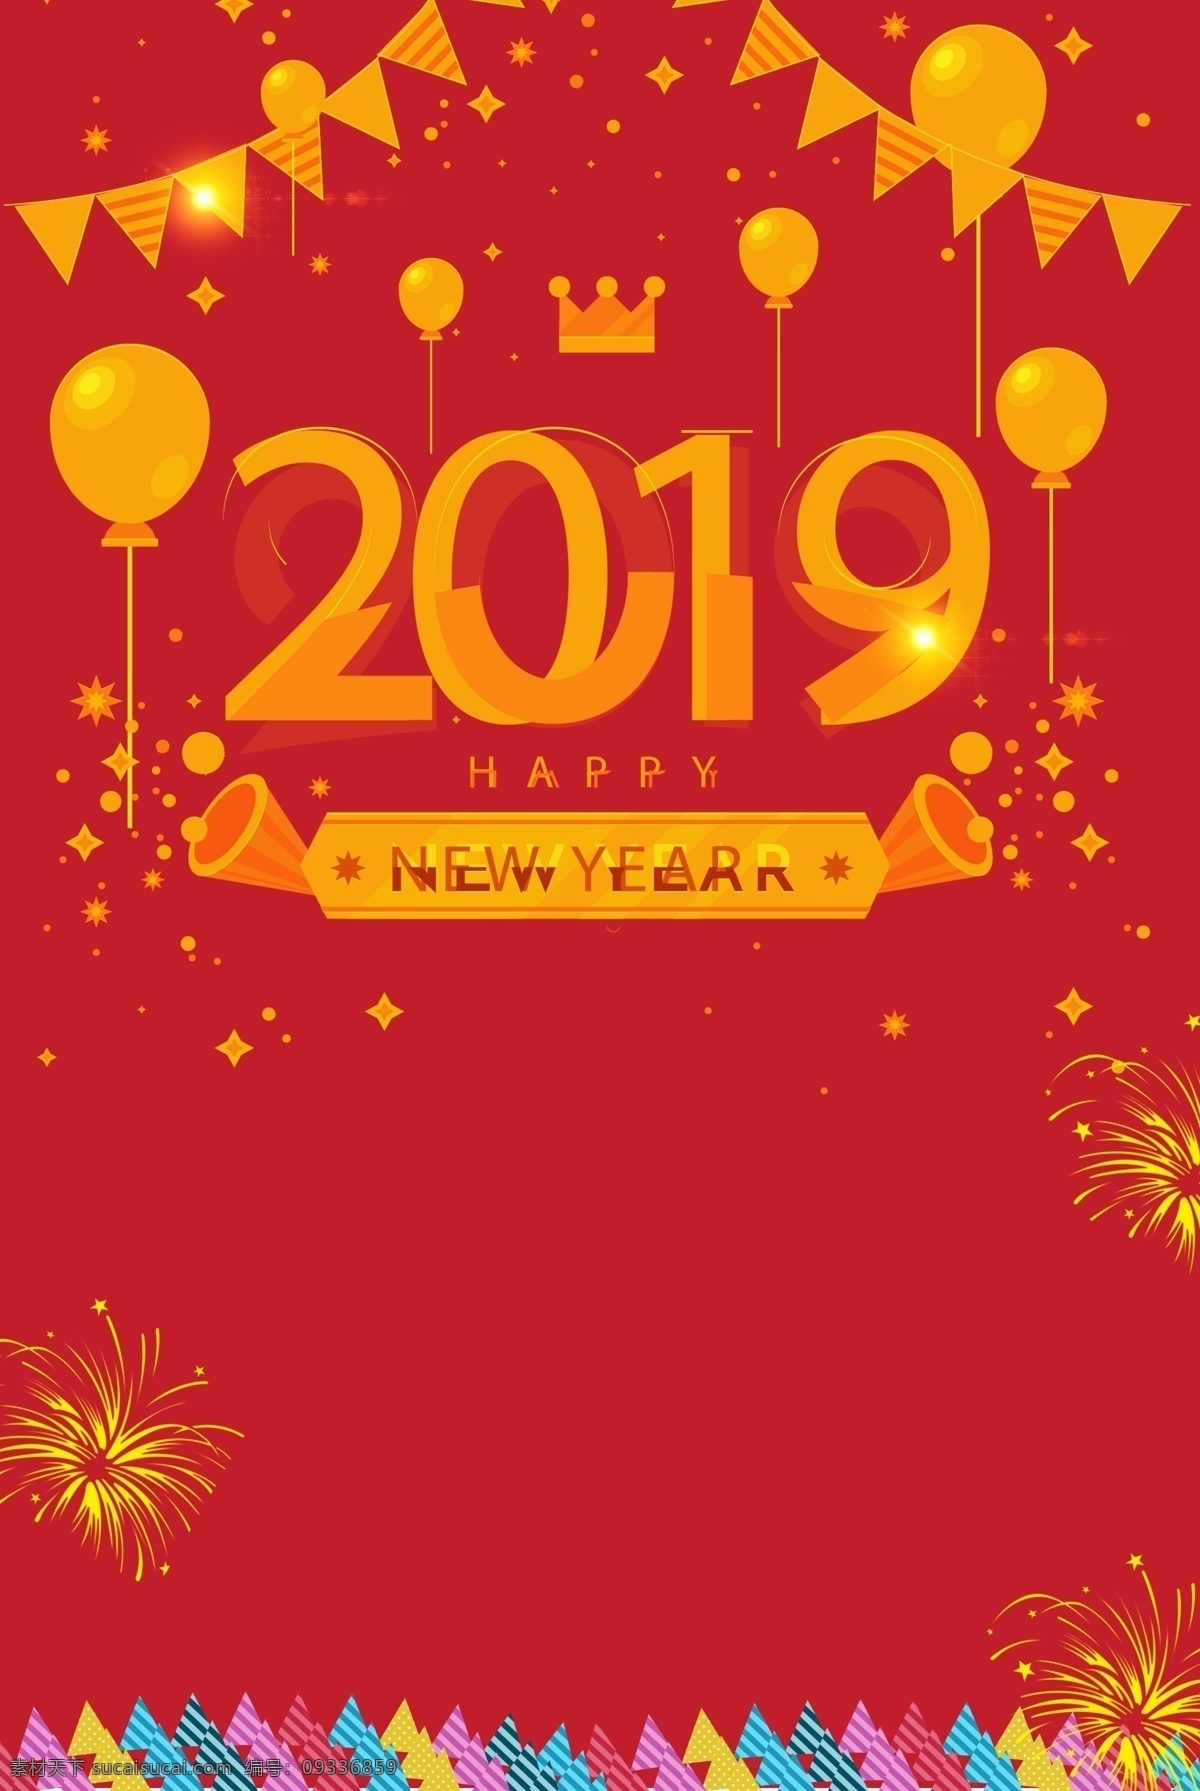 元旦 新年 2019 海报 背景 红色 气球 卡通 跨年 彩旗 迎接新年 烟花 元旦活动